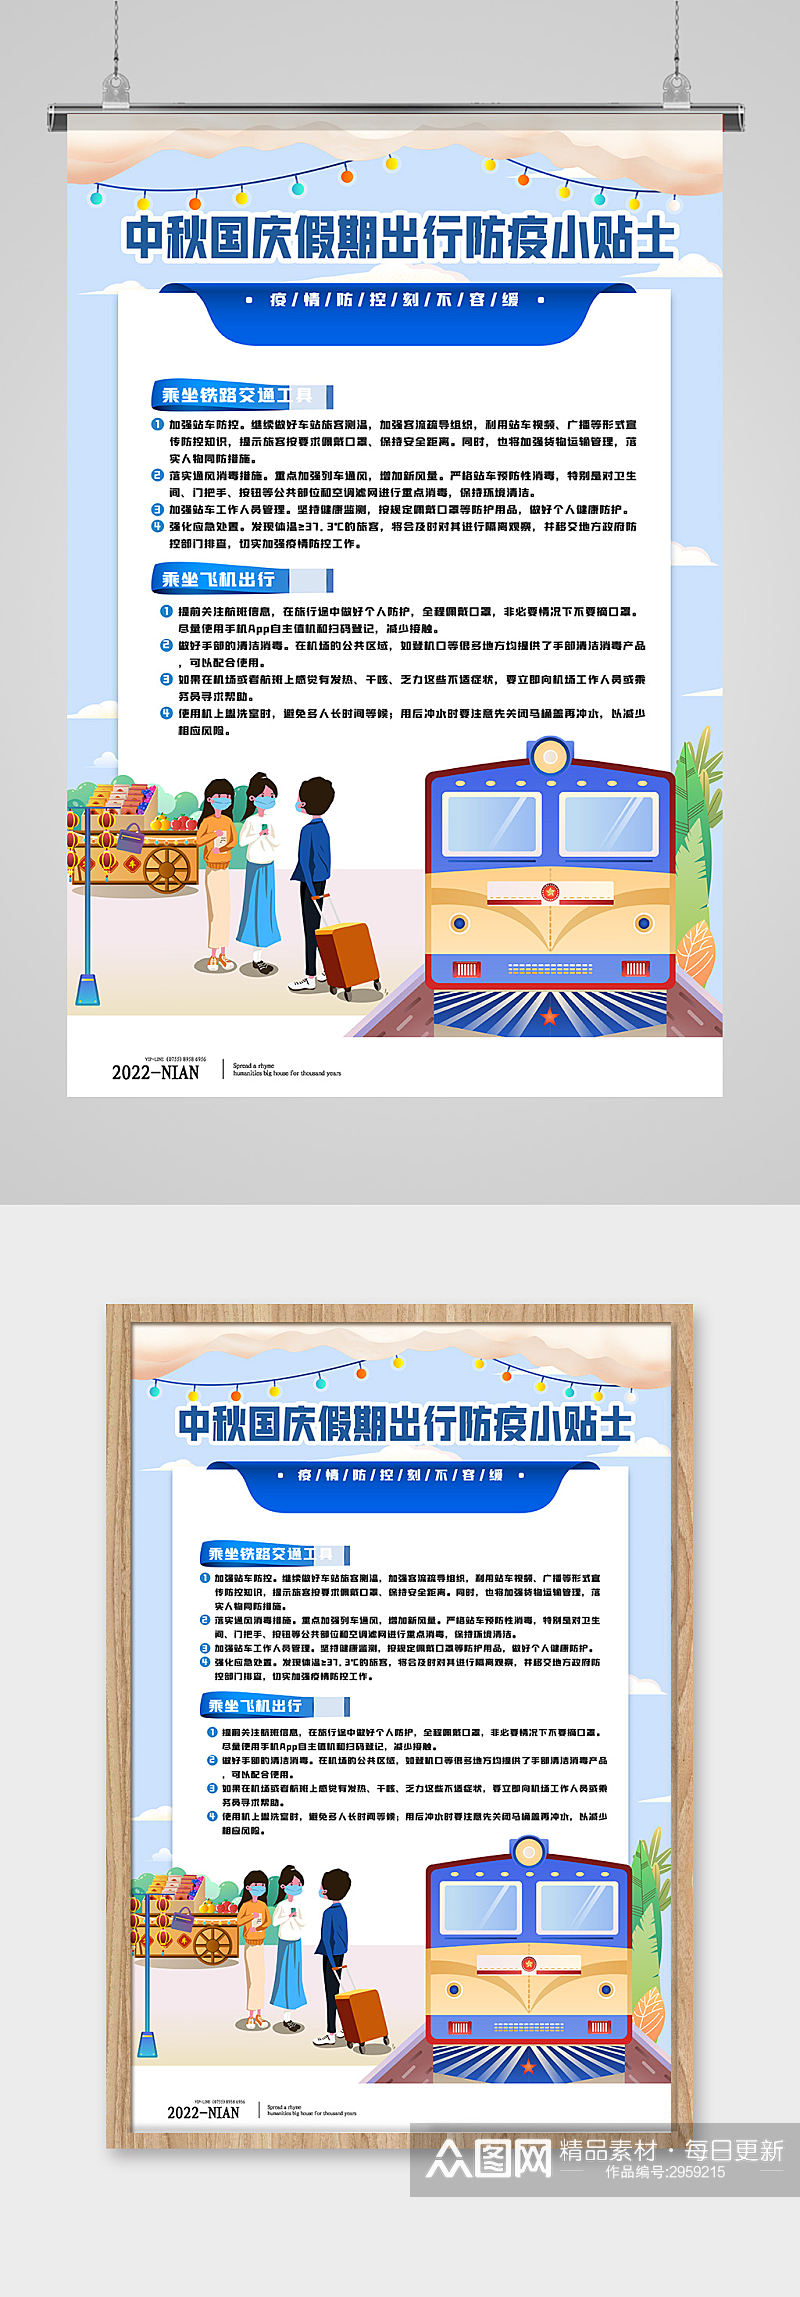 中秋国庆防疫小贴士海报设计素材